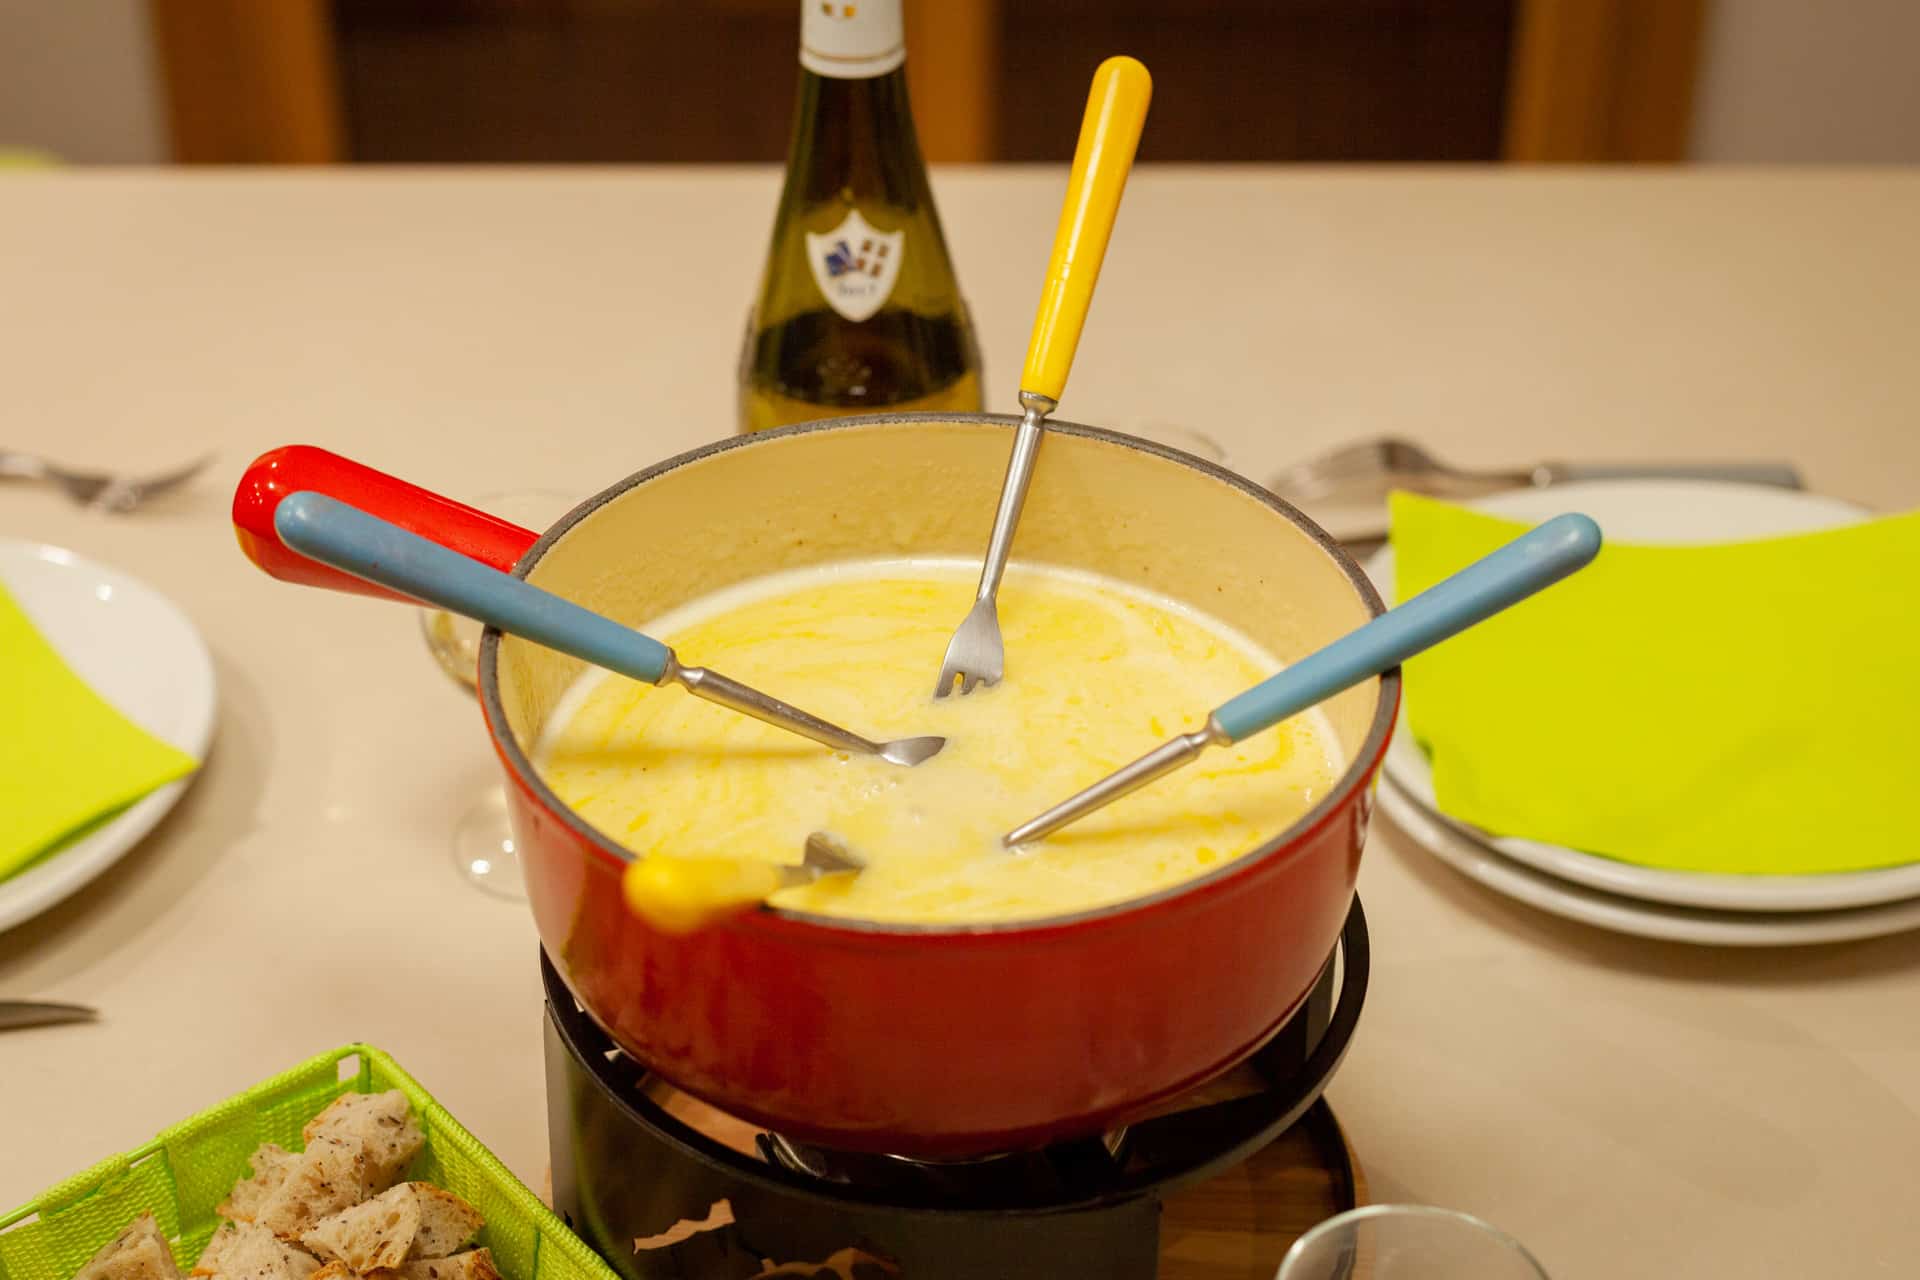 Quels fromages choisir pour votre fondue savoyarde ?